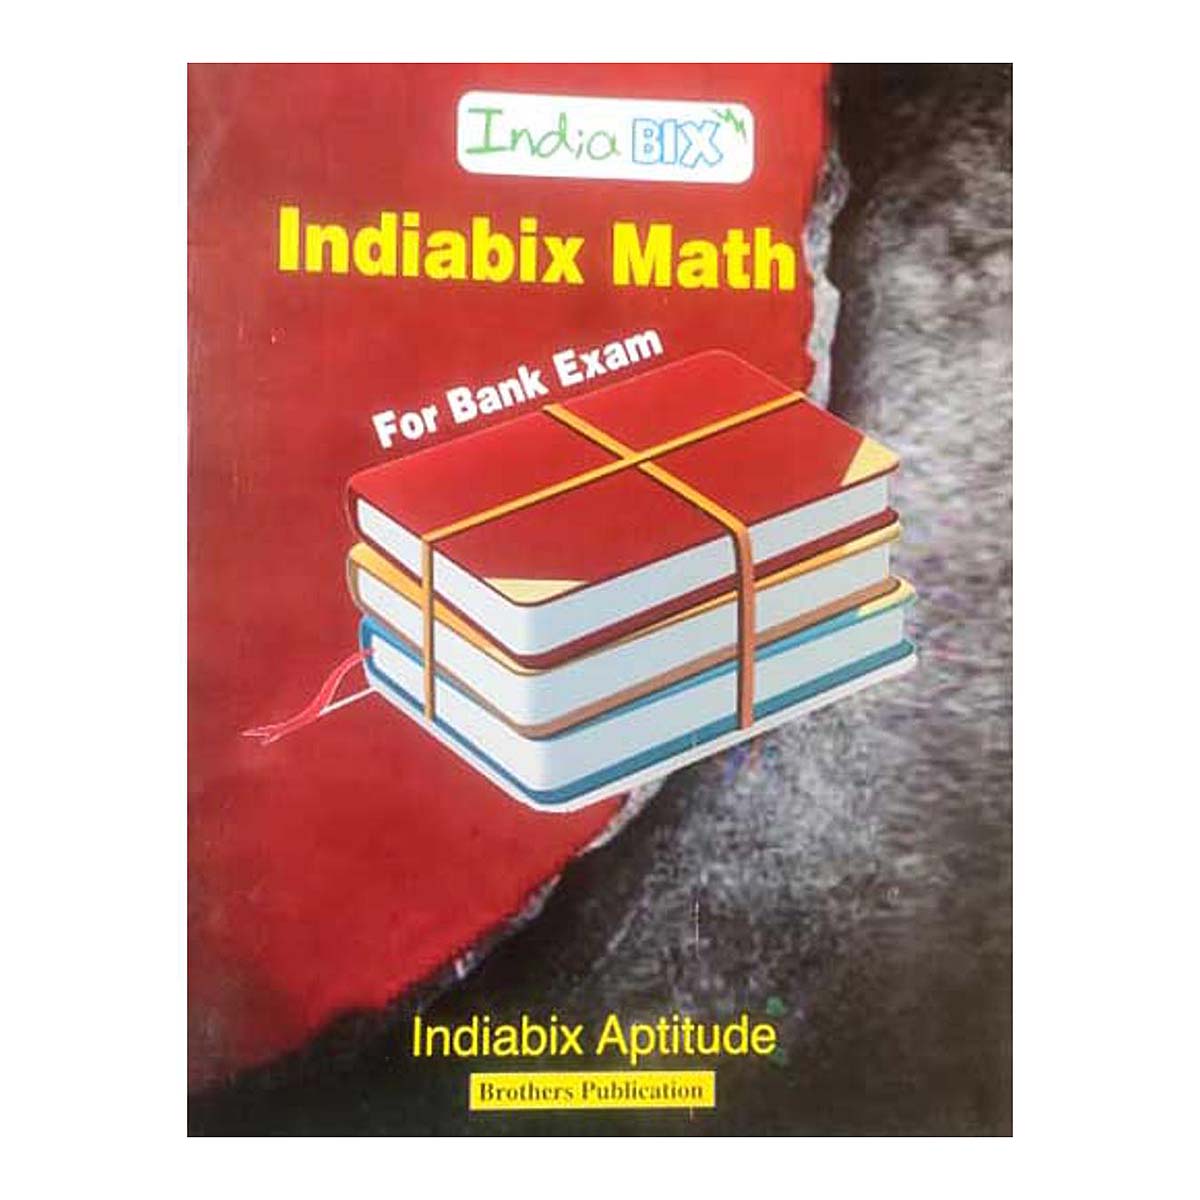 Indiabix Math